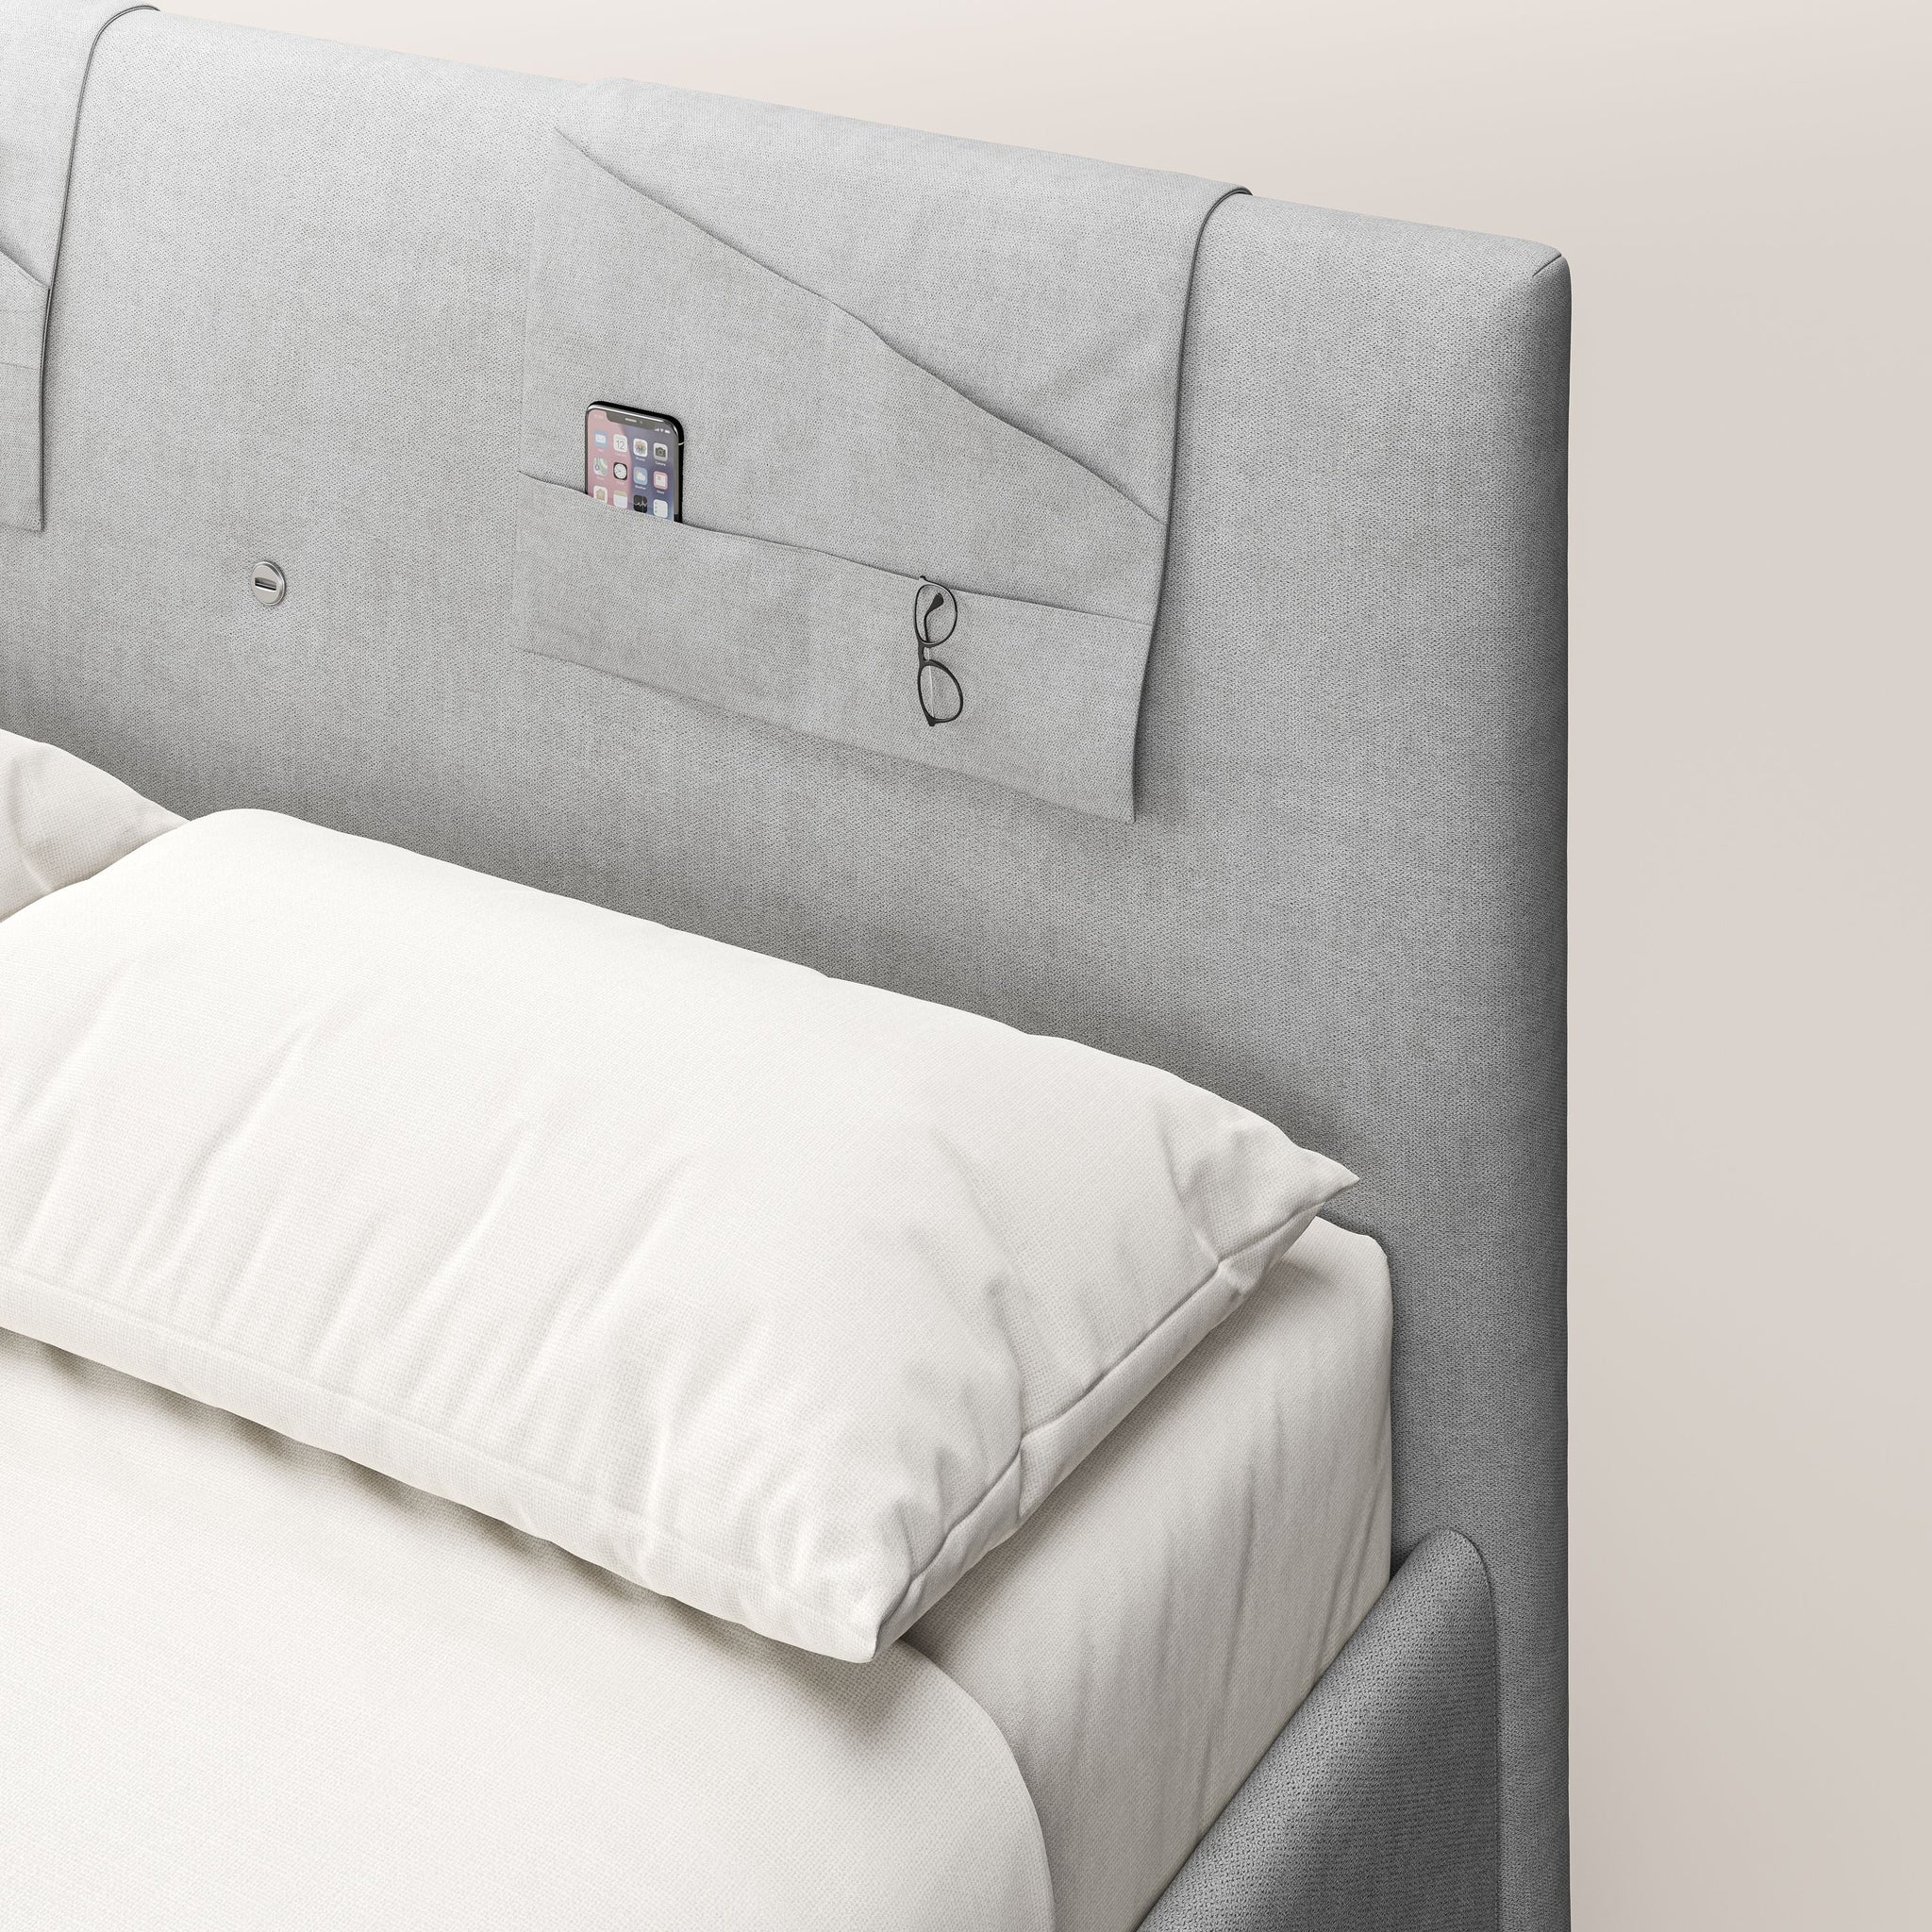 Horus lit rembourré avec coffre et prise USB sur la tête de lit en tissu imperméable T02